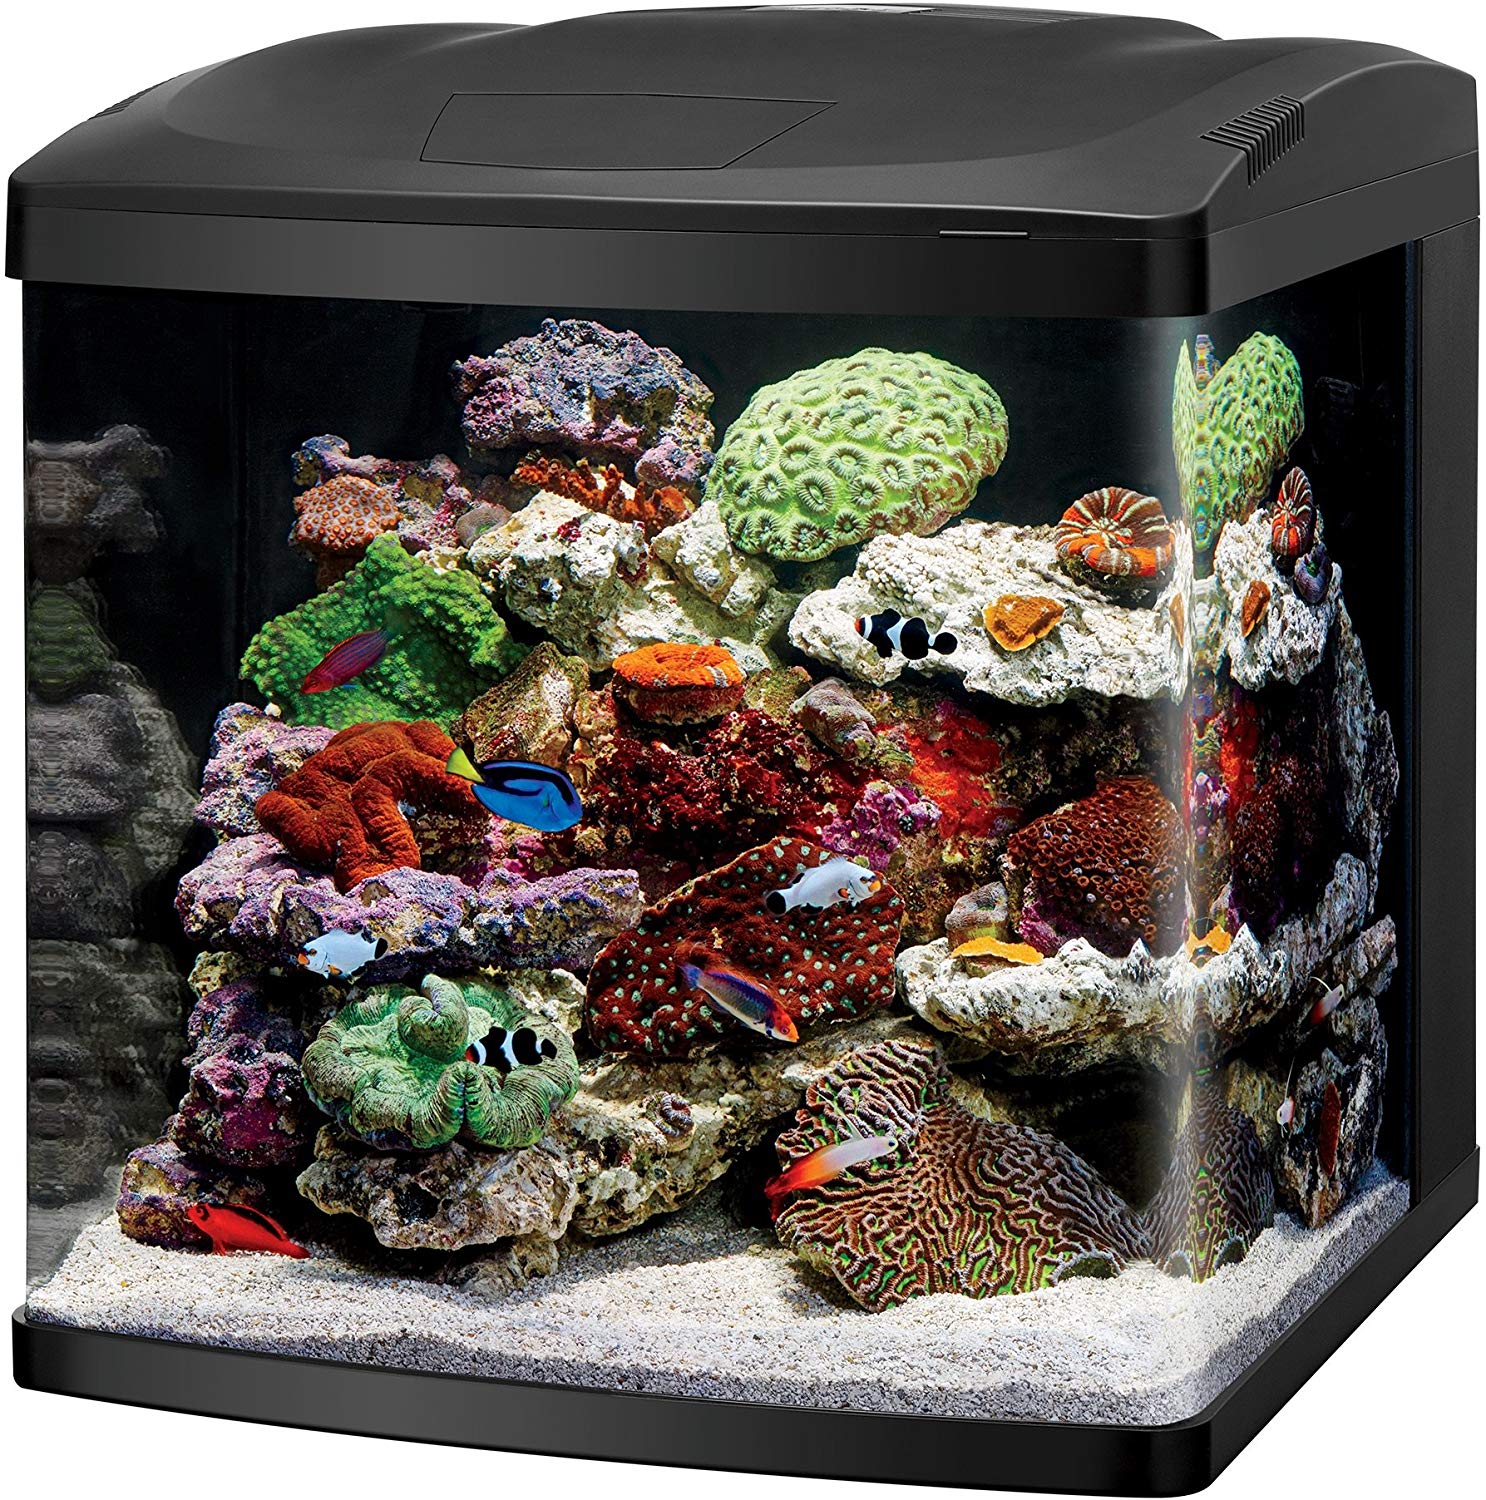 Coralife aquarium kit